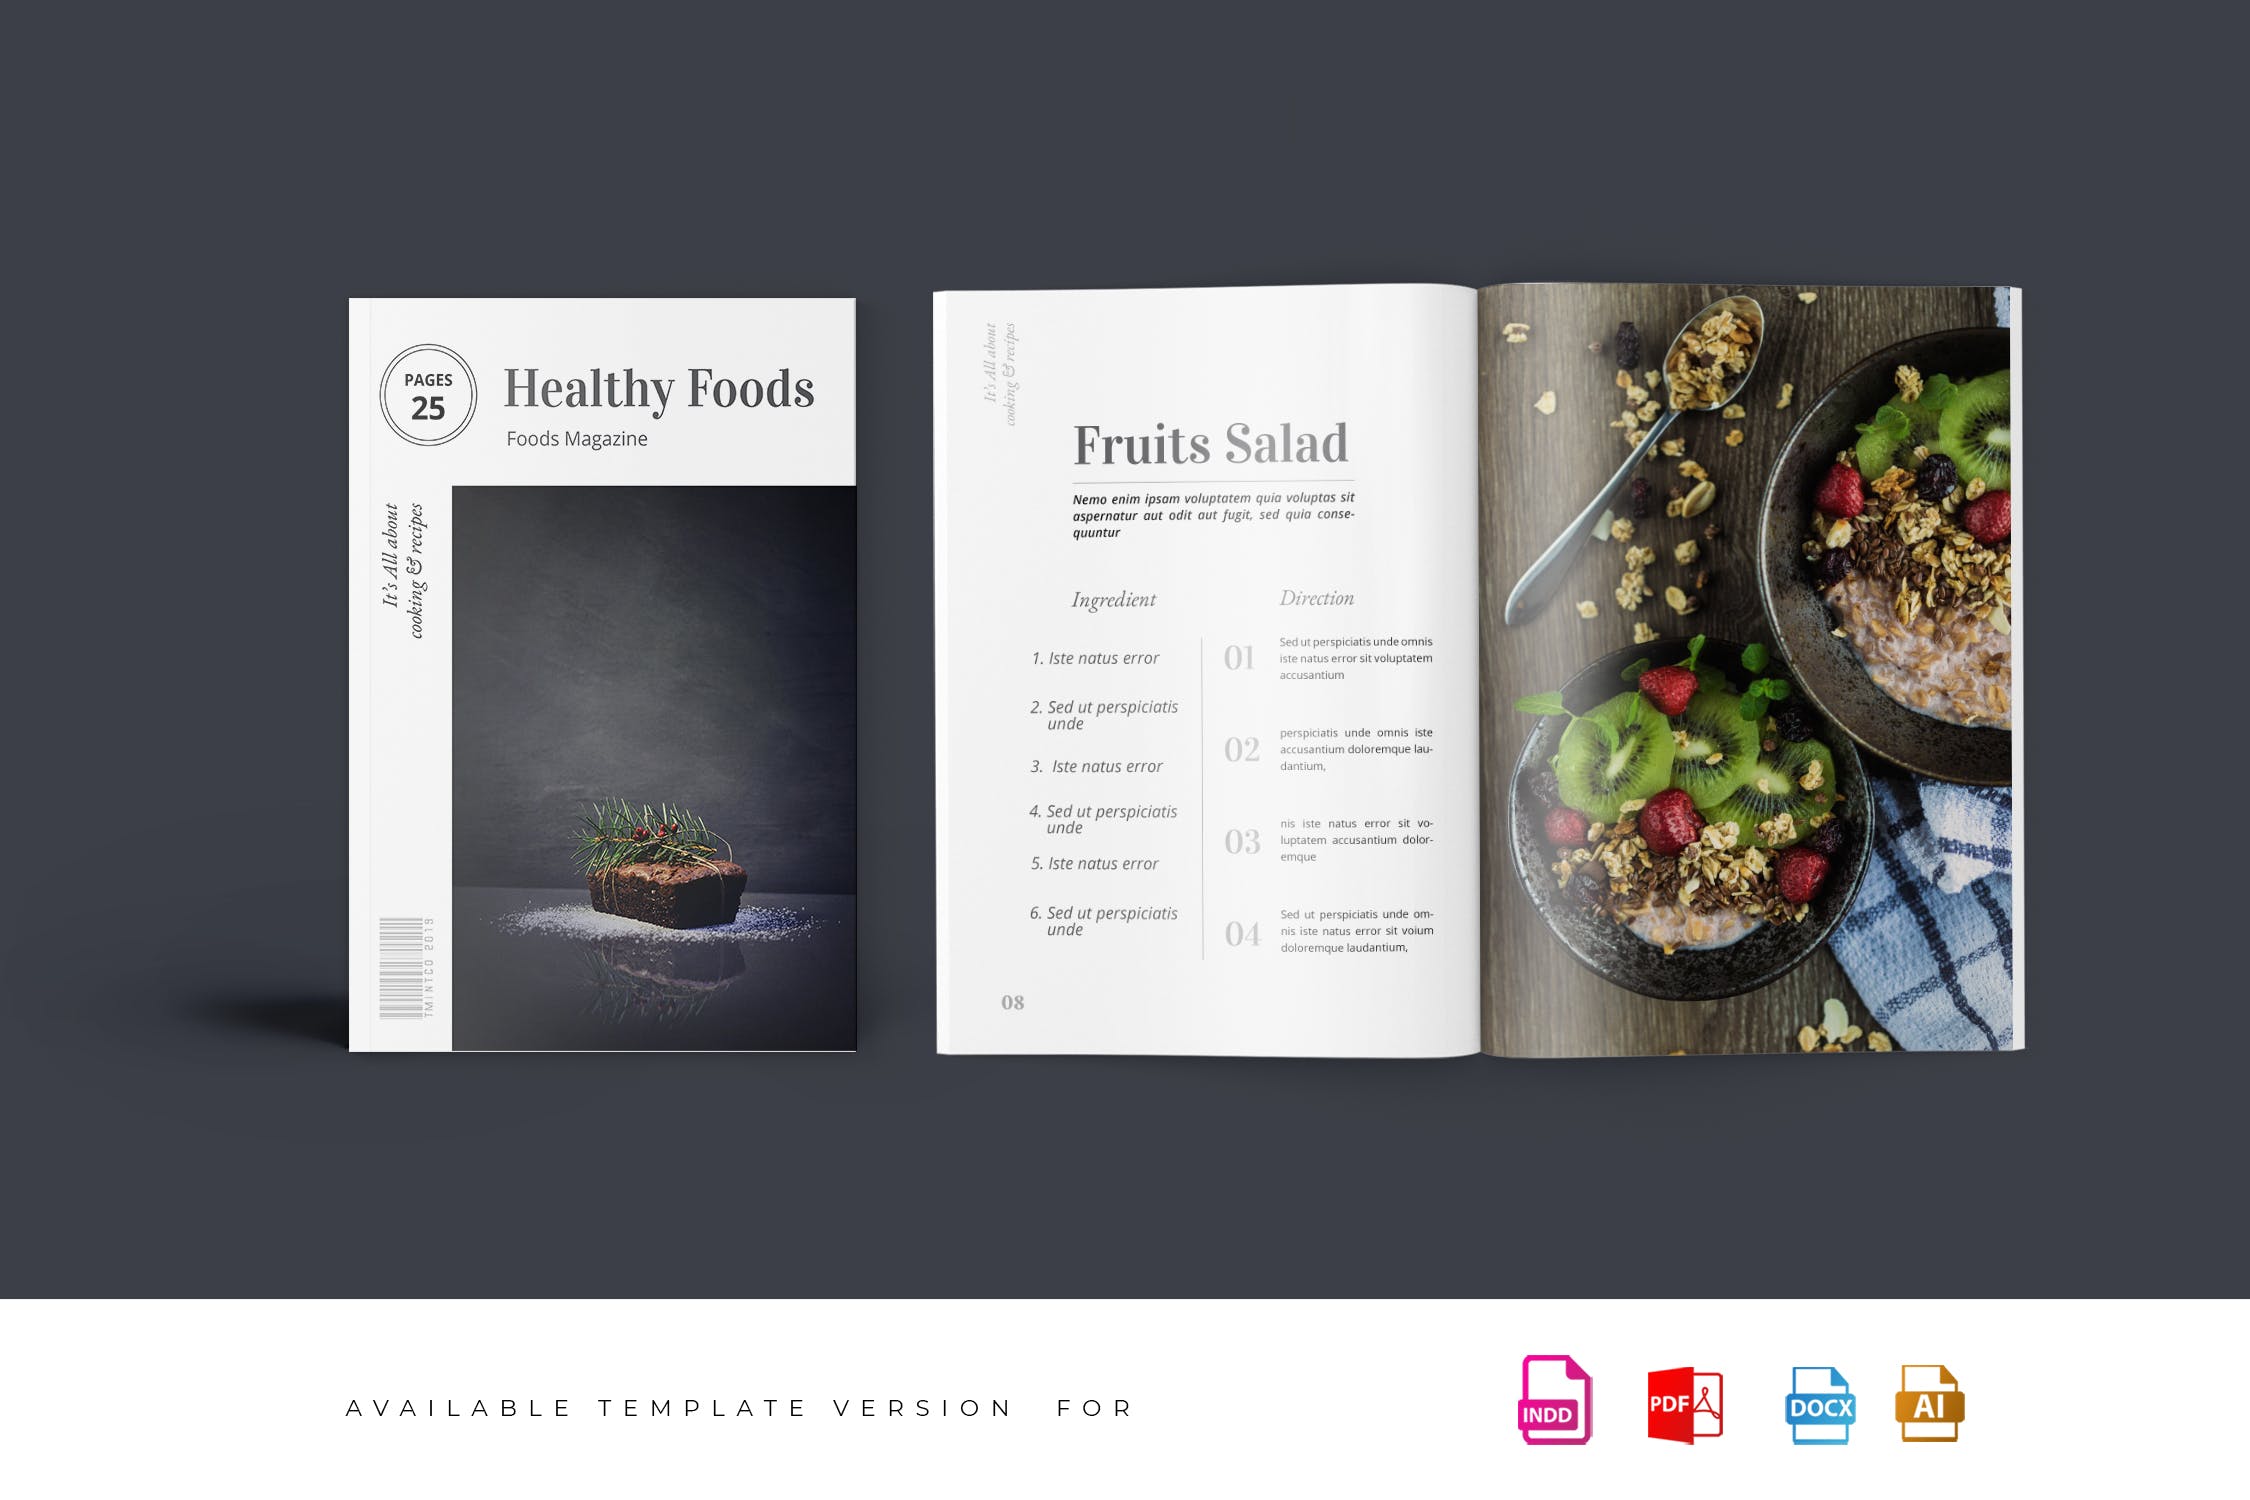 高端美食杂志排版设计模板 Food Magazine Template插图